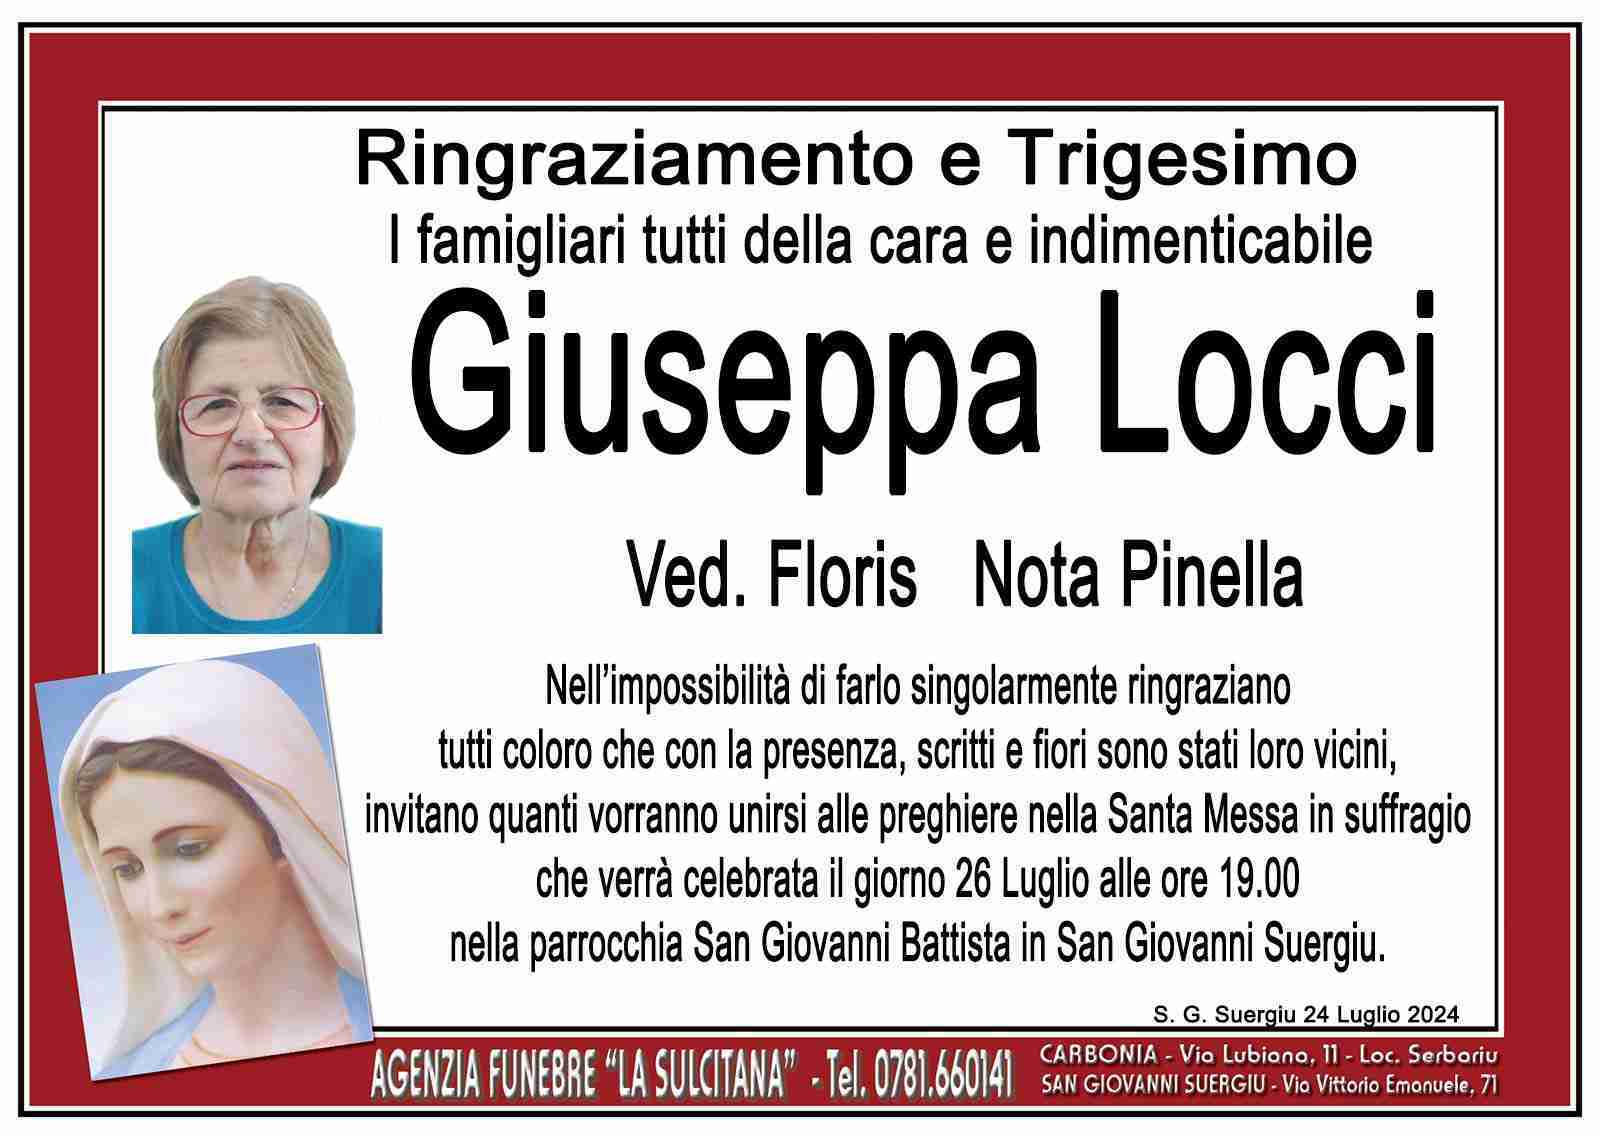 Giuseppa Locci